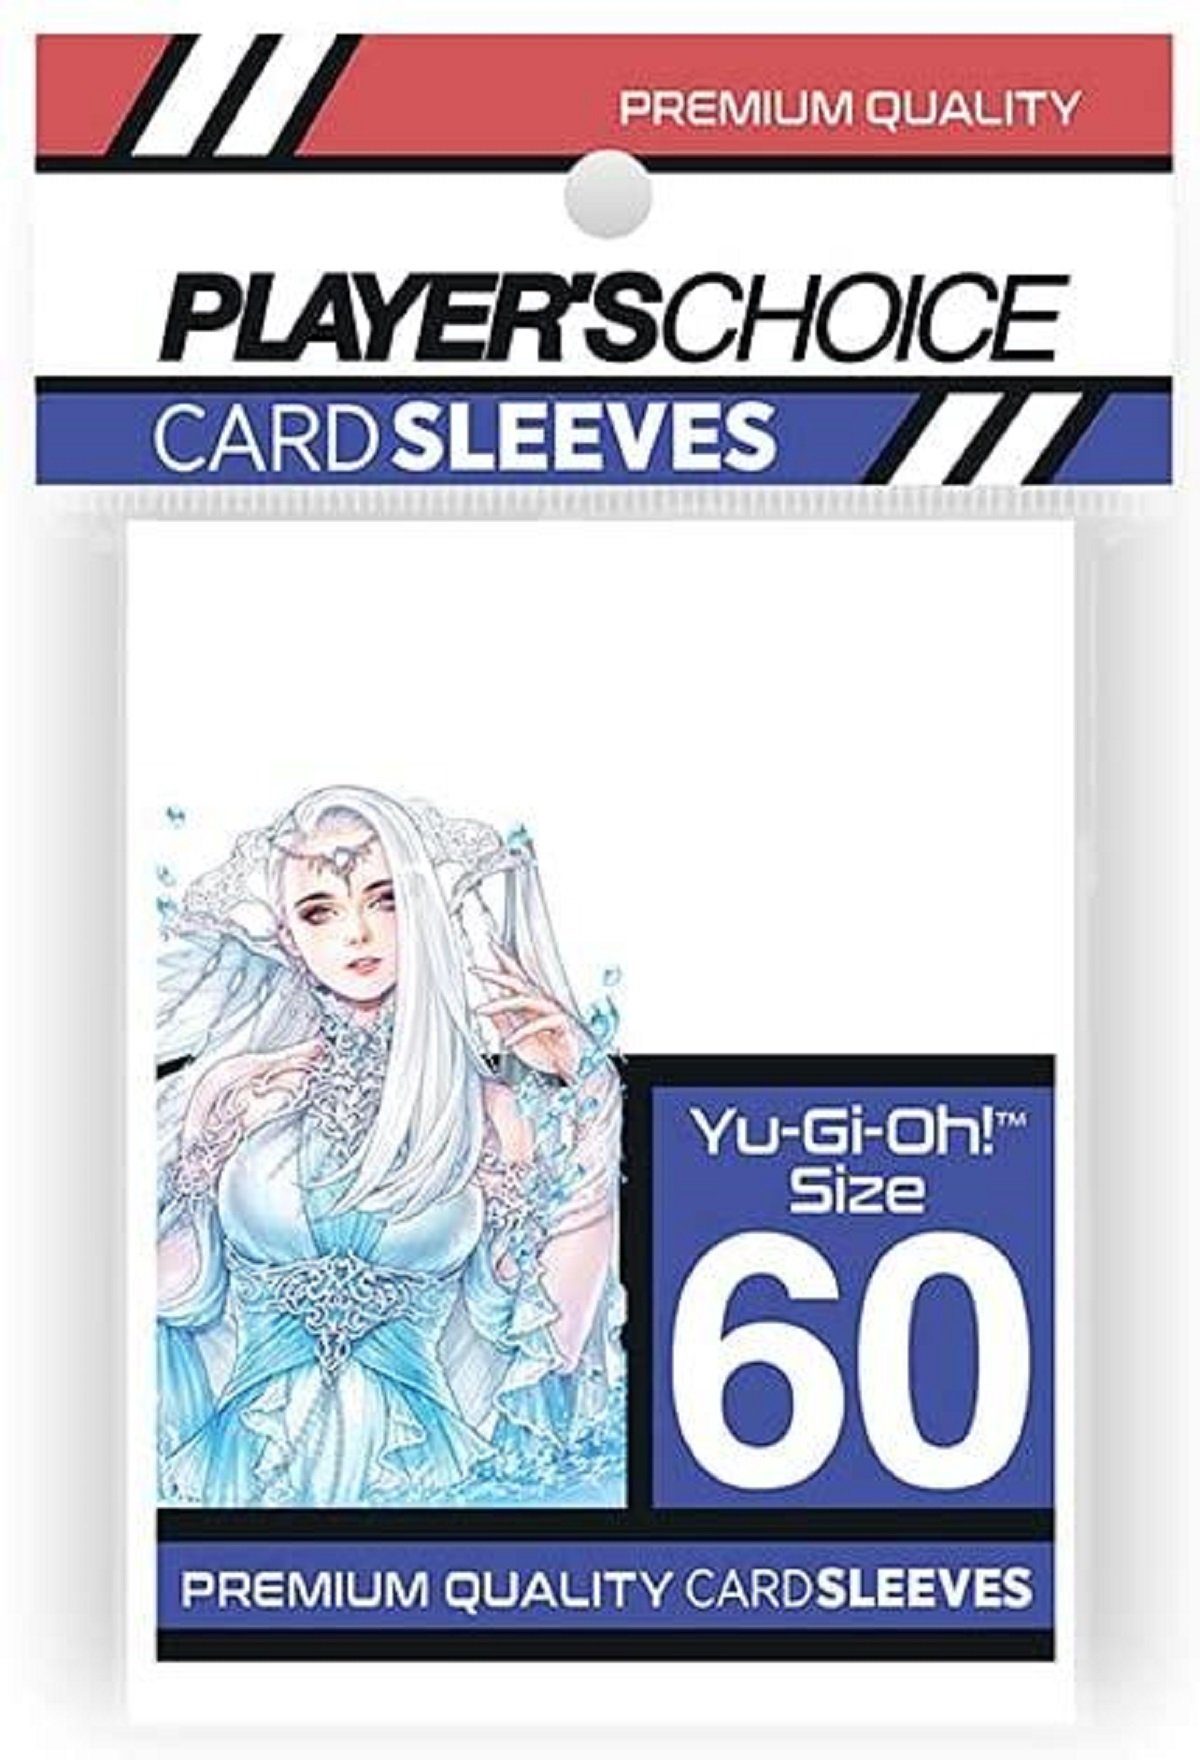 japanime games Sammelkarte Player's Choice - 60 durchsichtige Kartenhüllen für Yu-Gi-Oh! Karten